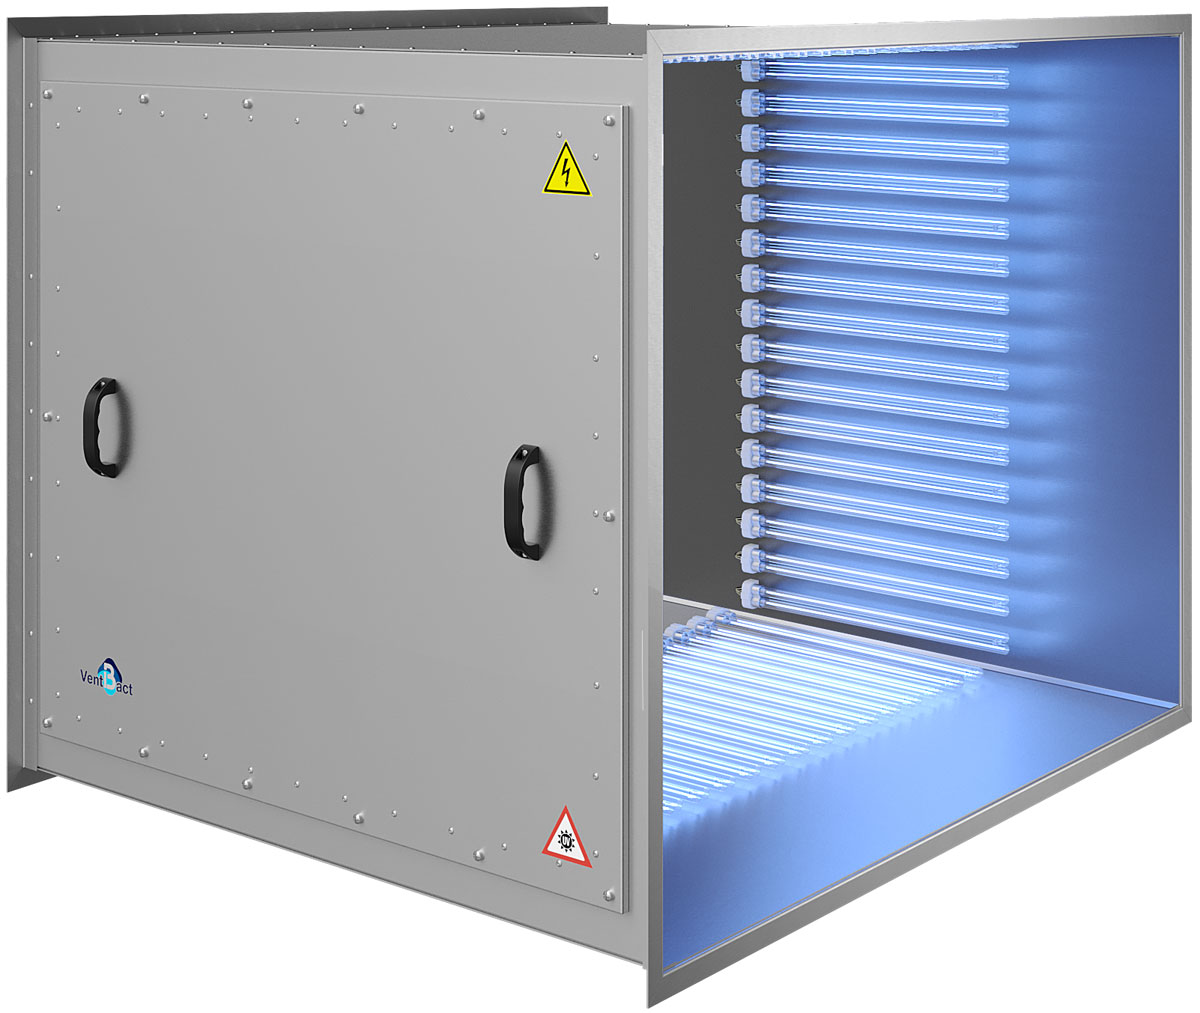 Бактерицидная секция Vent Bact VB 6600 для обеззараживания воздуха в системах вентиляции и кондиционирования